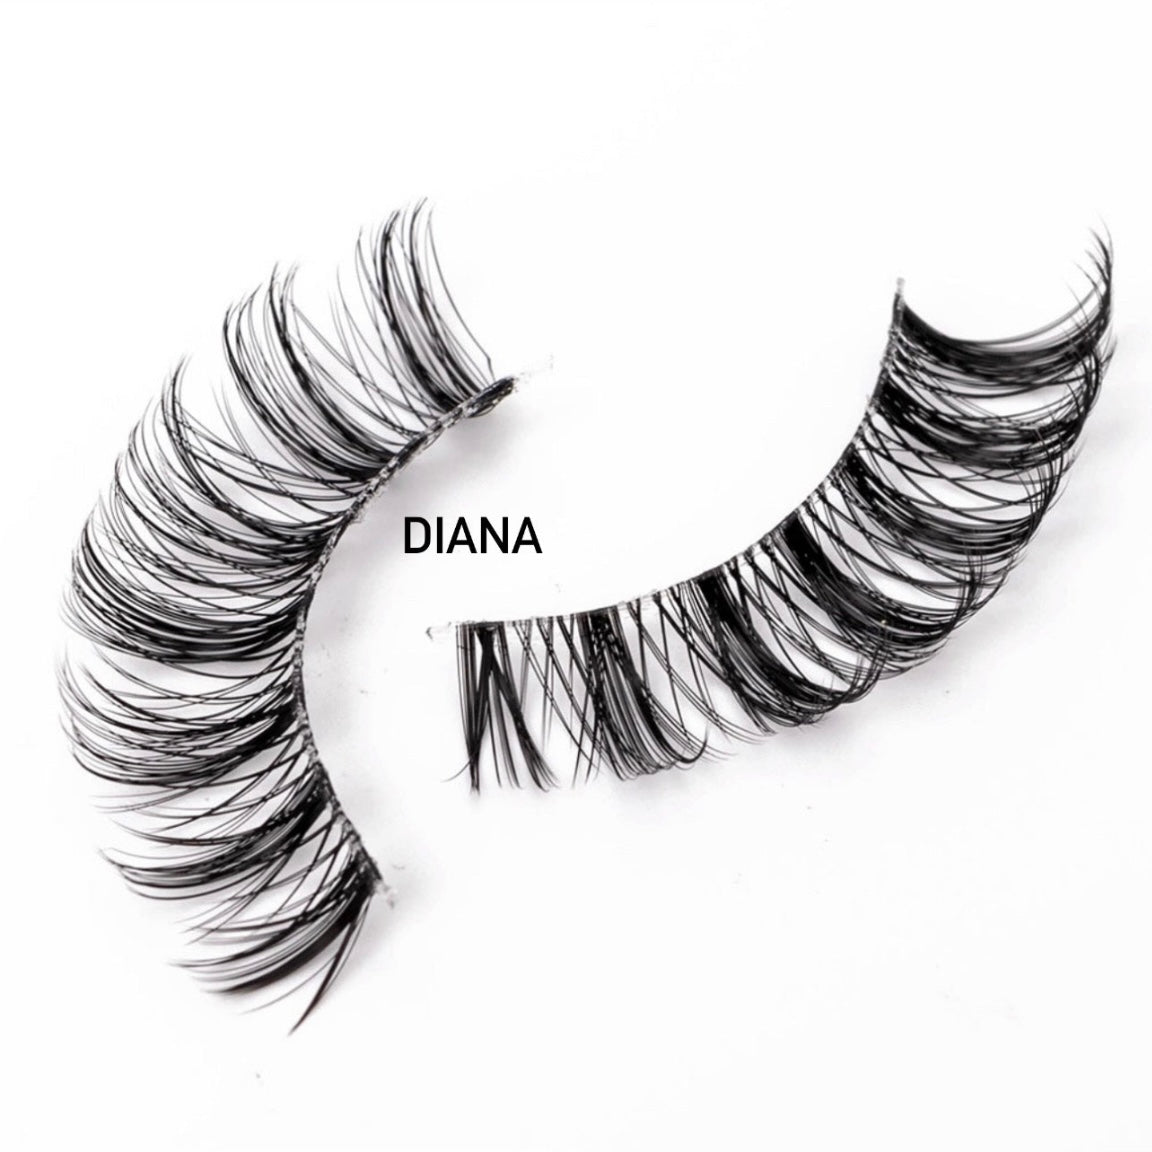 Diana - lashes